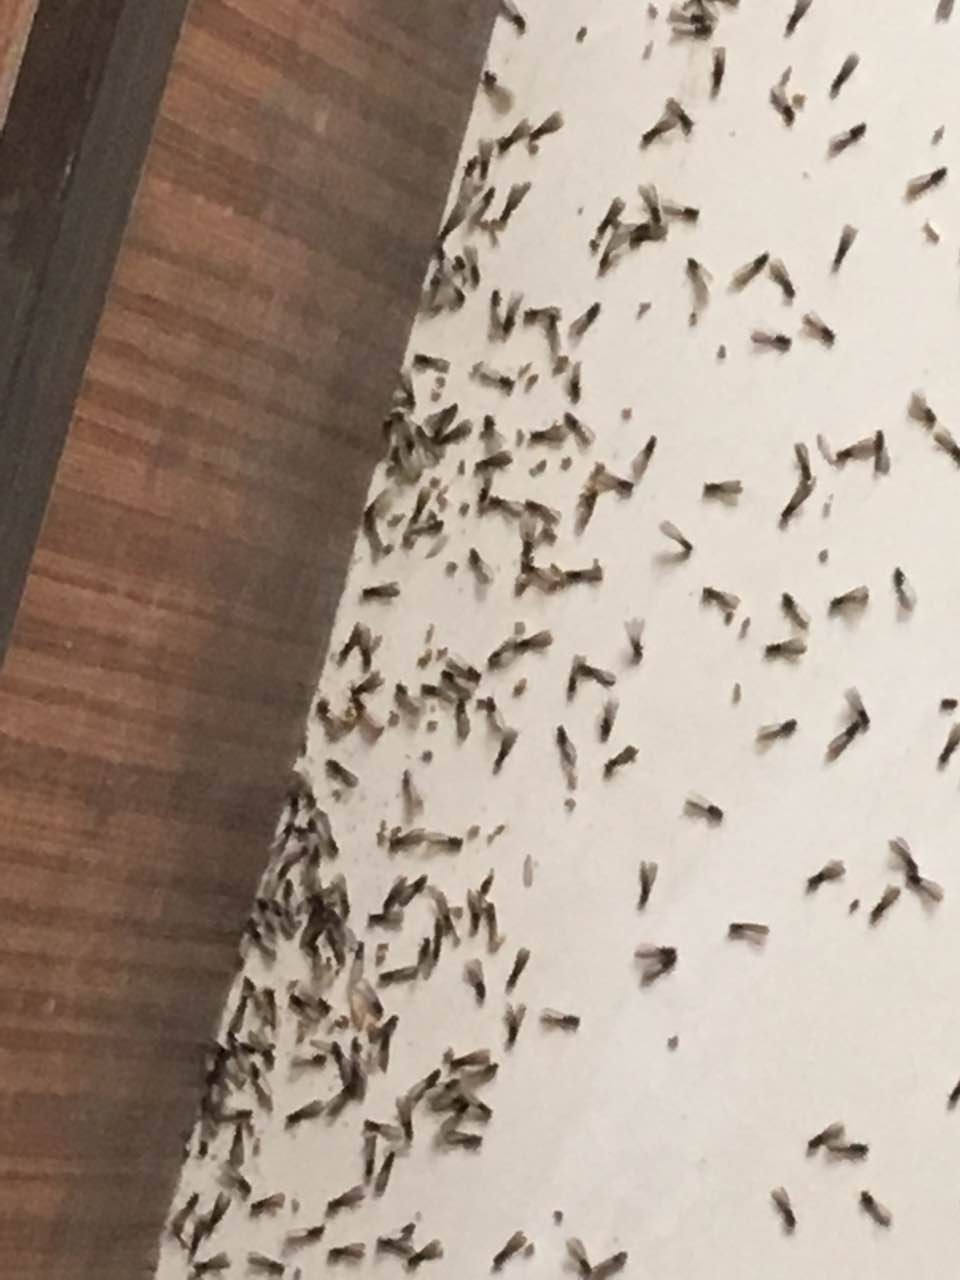 荆州市仁德白蚁防治中心的蚊子防治